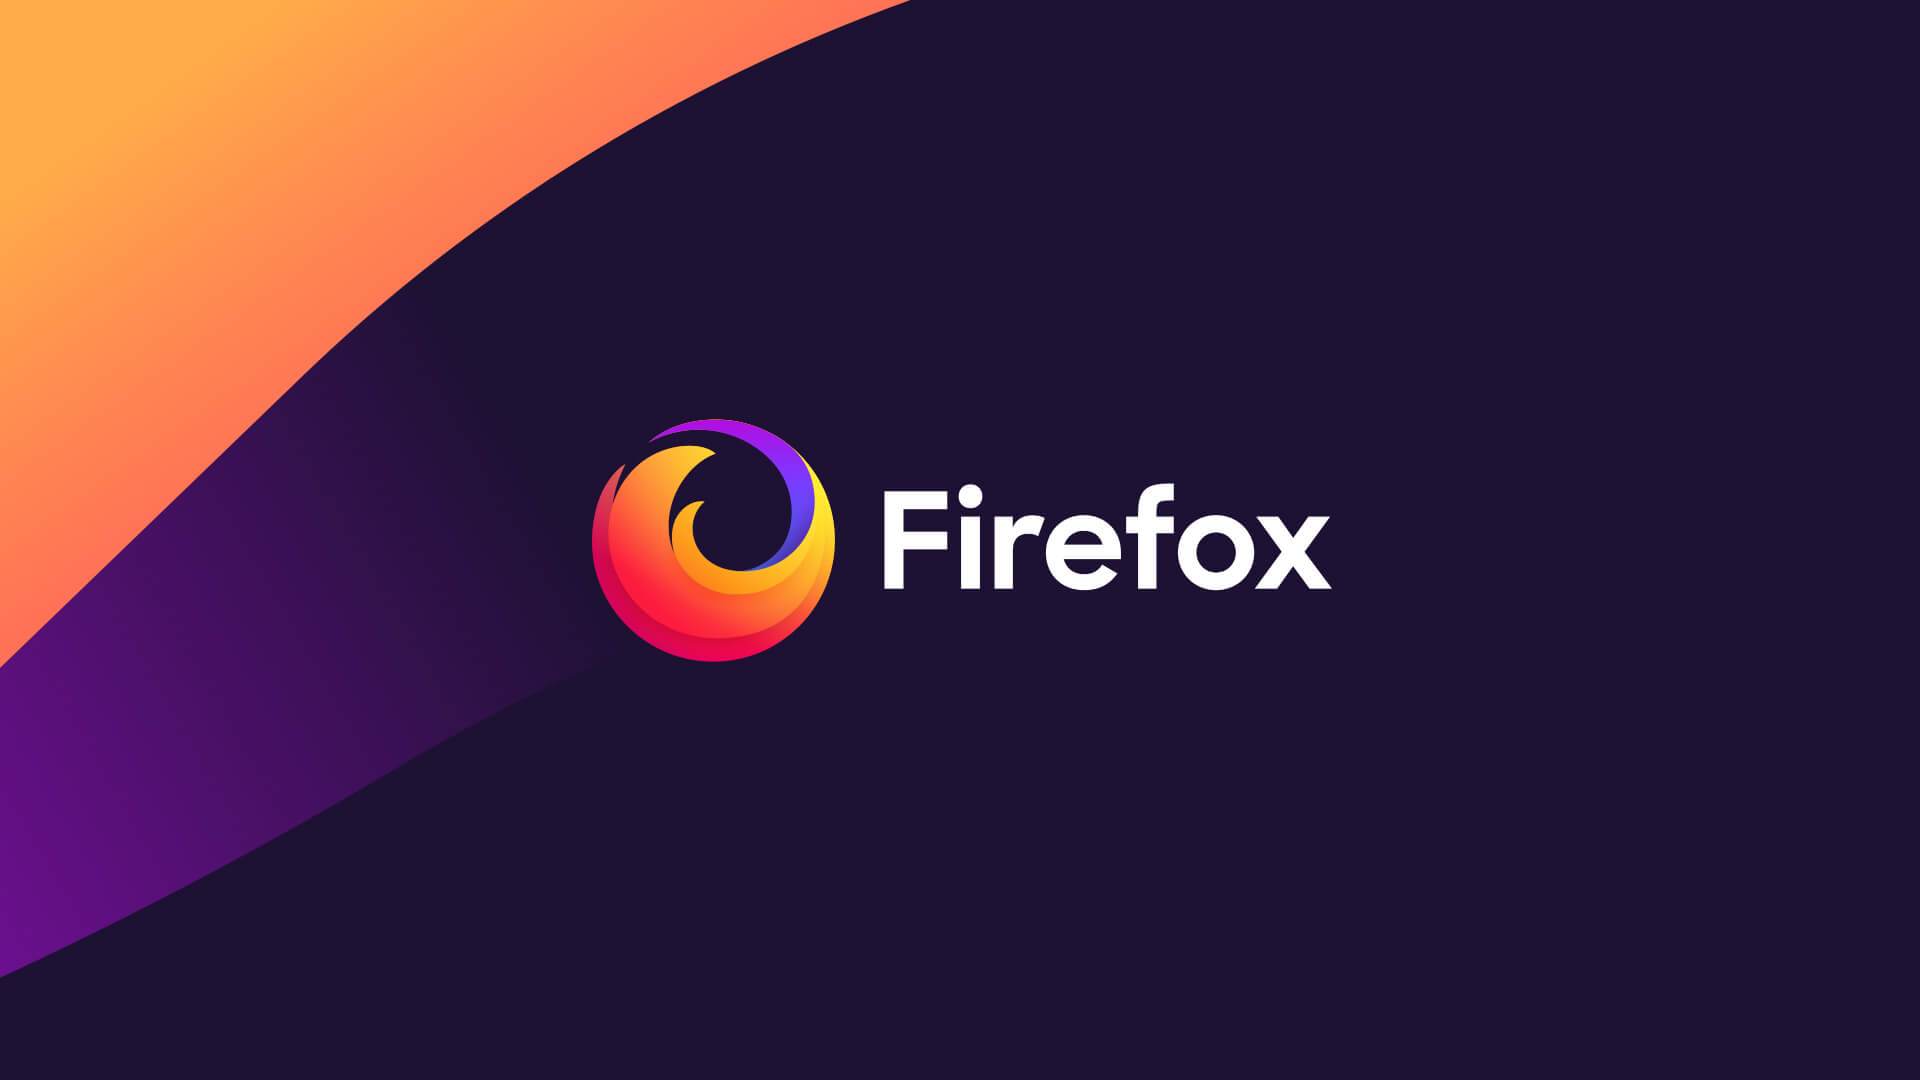 Tõsine Firefoxi viga parandati üks päev pärast versiooni 72 väljaandmist -